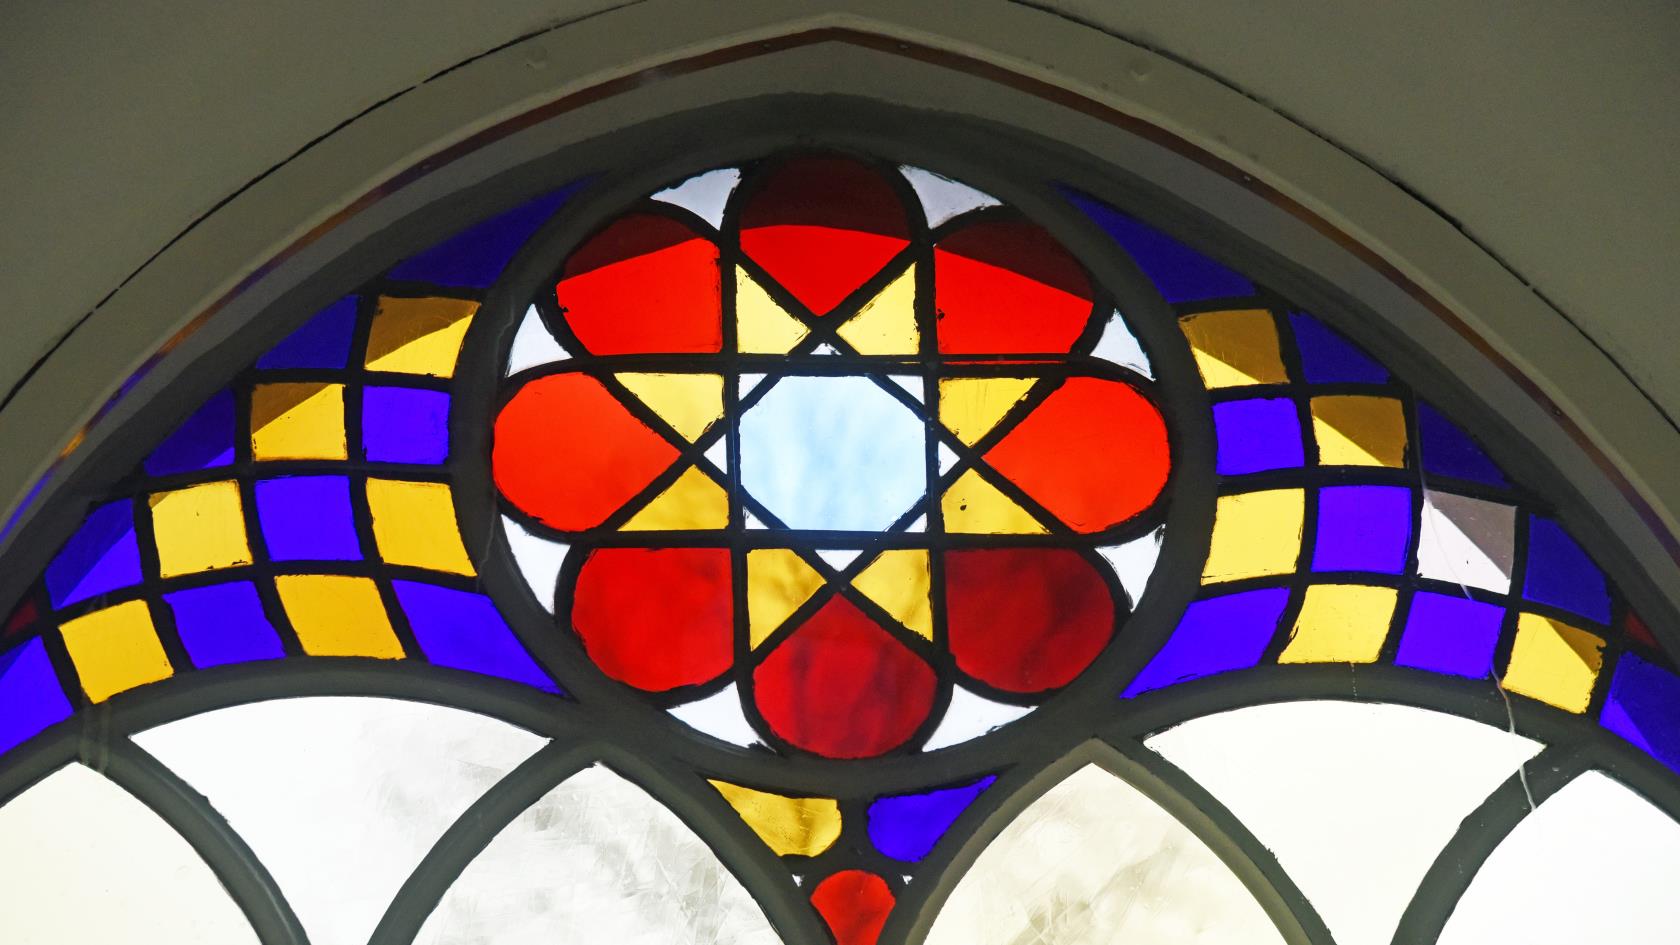 Detalj av ett färggrant kyrkfönster.